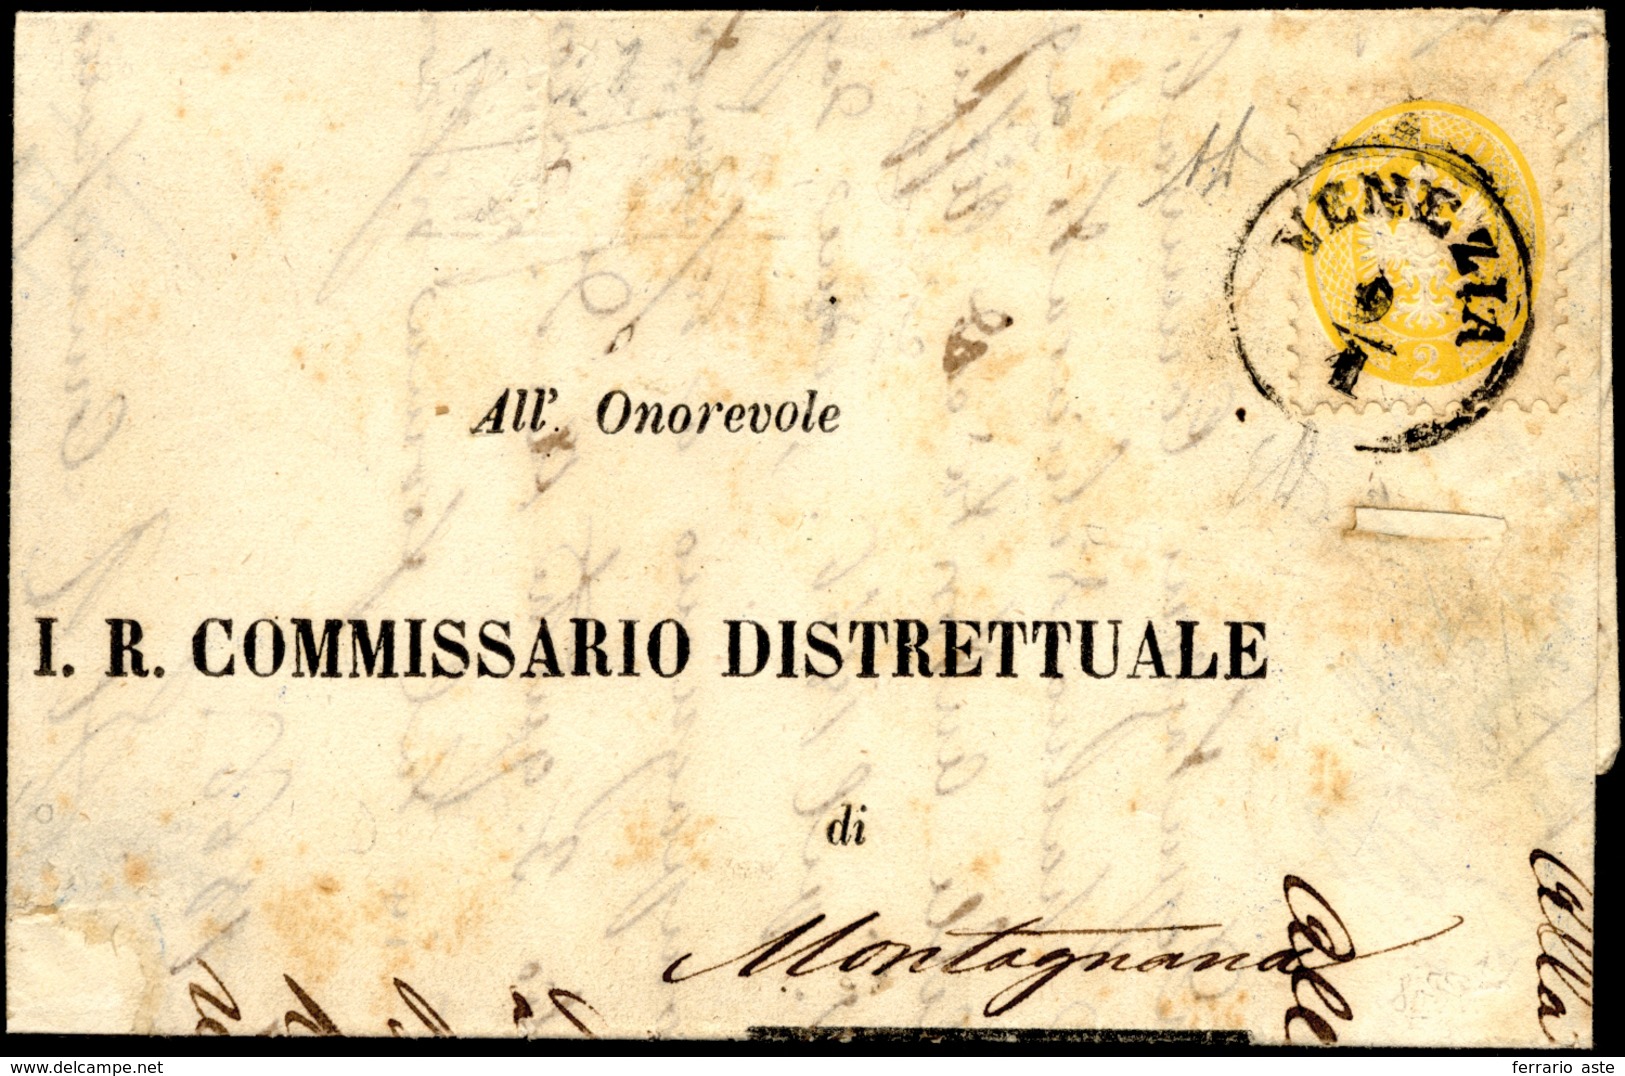 1866 - 2 Soldi Giallo, Dent. 9 1/2 (41), Perfetto, Isolato Su Sovracoperta Di Stampato Da Venezia 9/... - Lombardije-Venetië